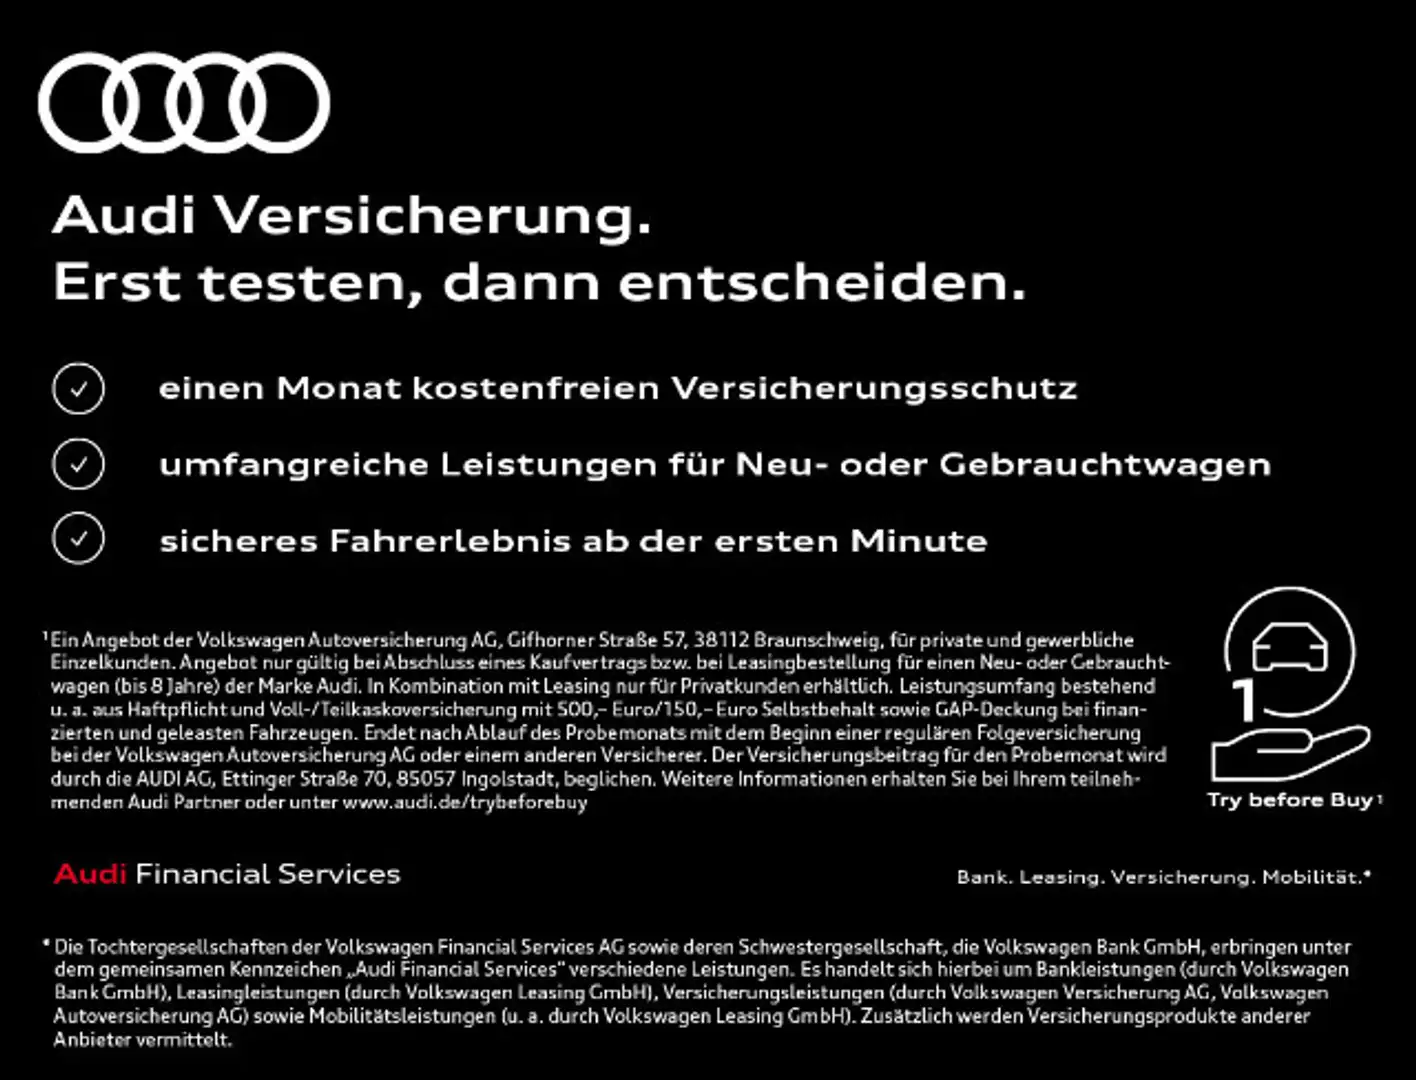 Audi TT RS Sonstige in Schwarz neu in Berlin für € 102.270